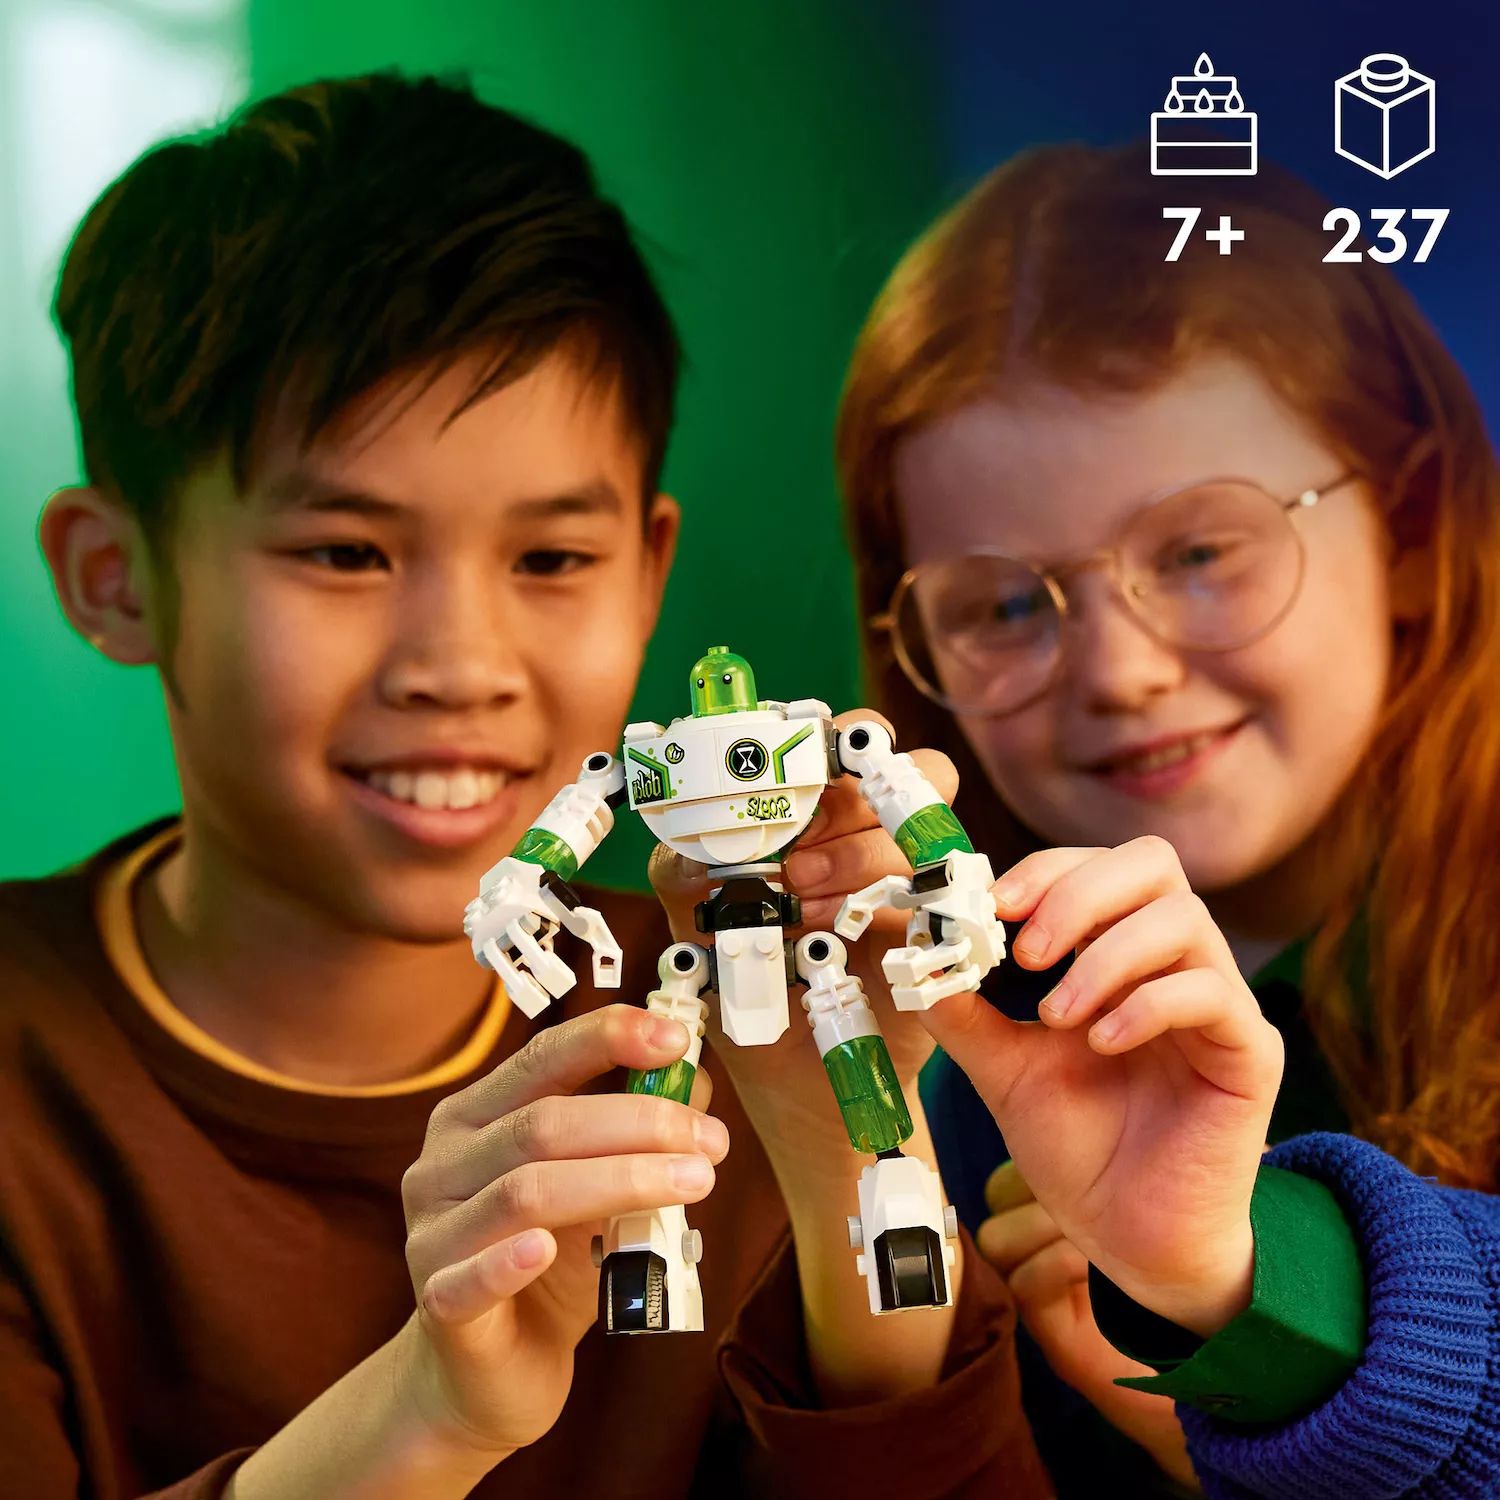 LEGO DREAMZzz Матео и робот Z-Blob из нового телешоу «Строительная игрушка» 71454 (237 деталей) LEGO lego dreamzzz матео и робот z blob персонаж игрушечного телевидения